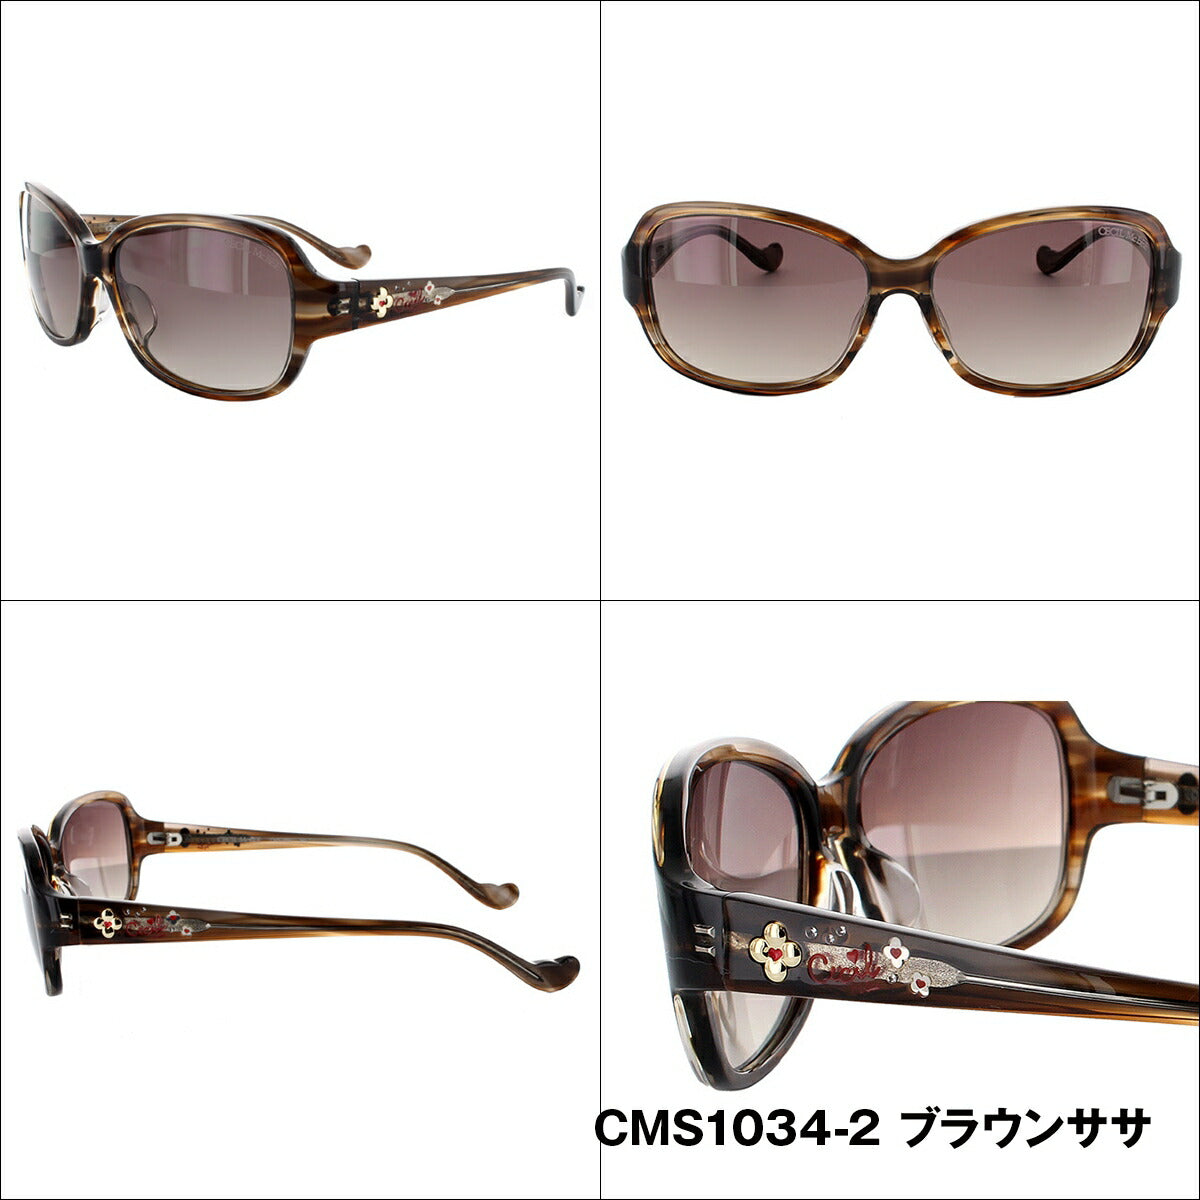 【送料無料】レディース サングラス CECIL McBEE セシルマクビー CMS 1034 全3色 57サイズ アジアンフィット 女性 UVカット 紫外線 対策 ブランド 眼鏡 メガネ アイウェア 人気 おすすめ ラッピング無料